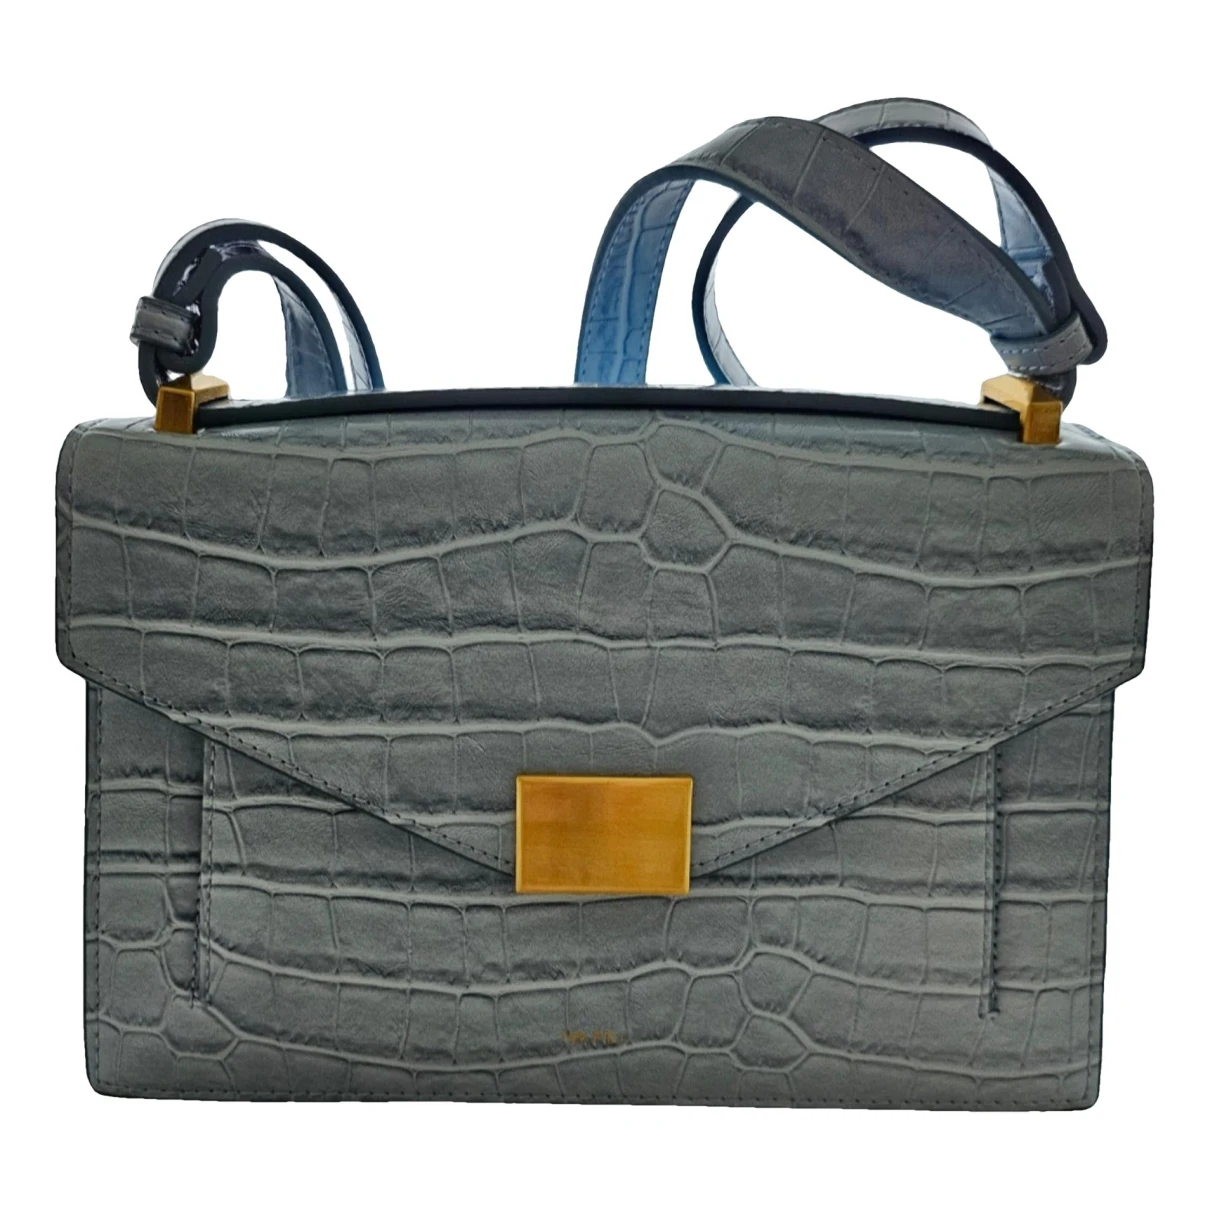 Pre-owned Jw Pei Vegan Leather Handbag In Blue